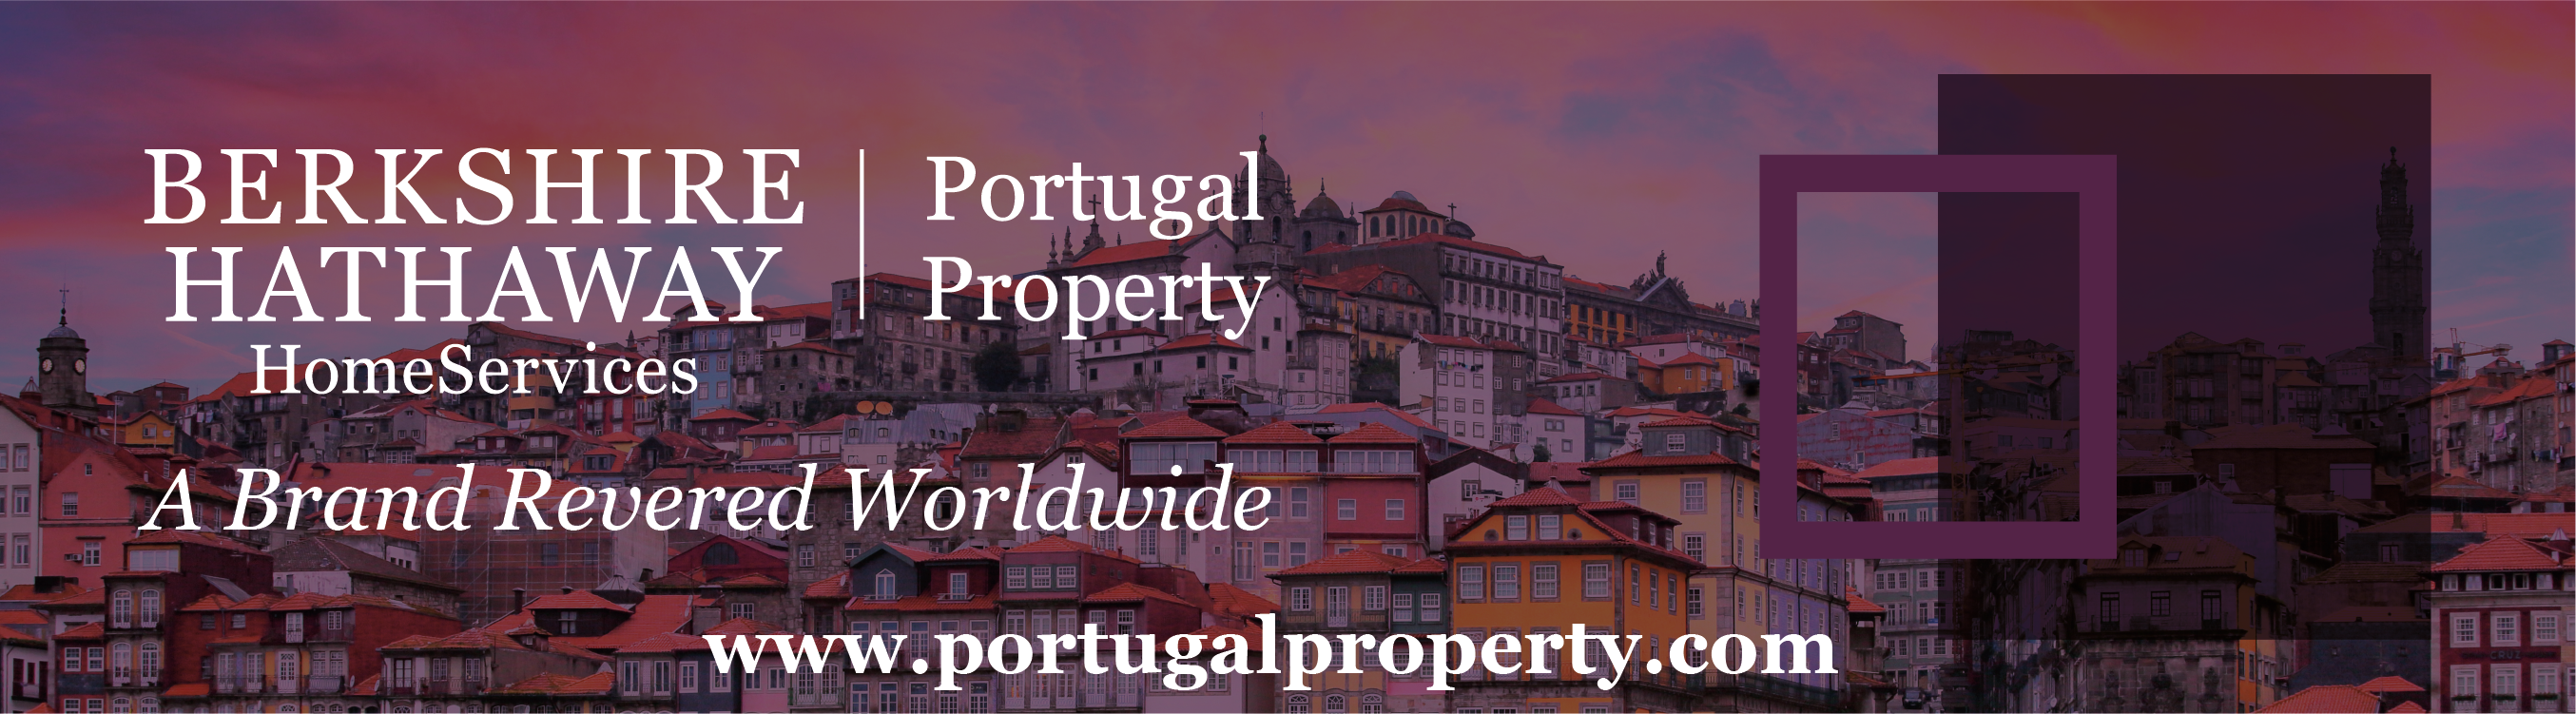 Portugalproperty.com